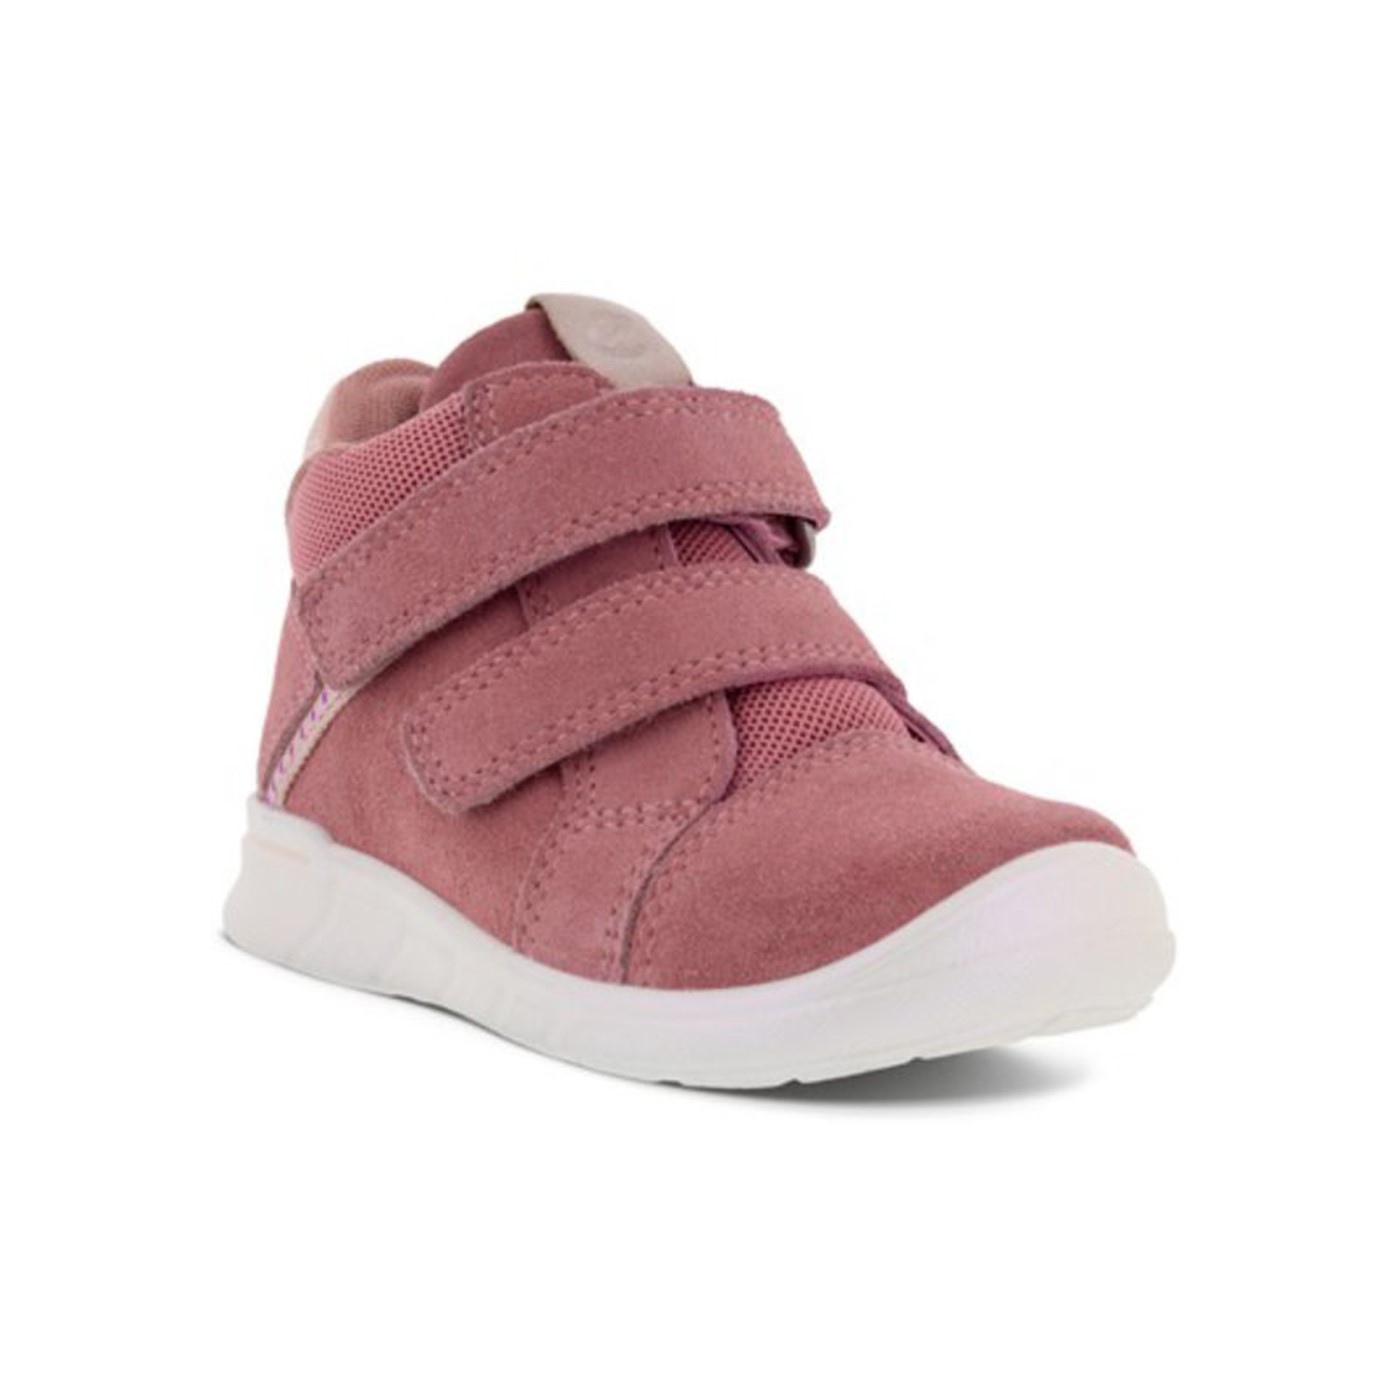 Pige sko i rosa (754331)